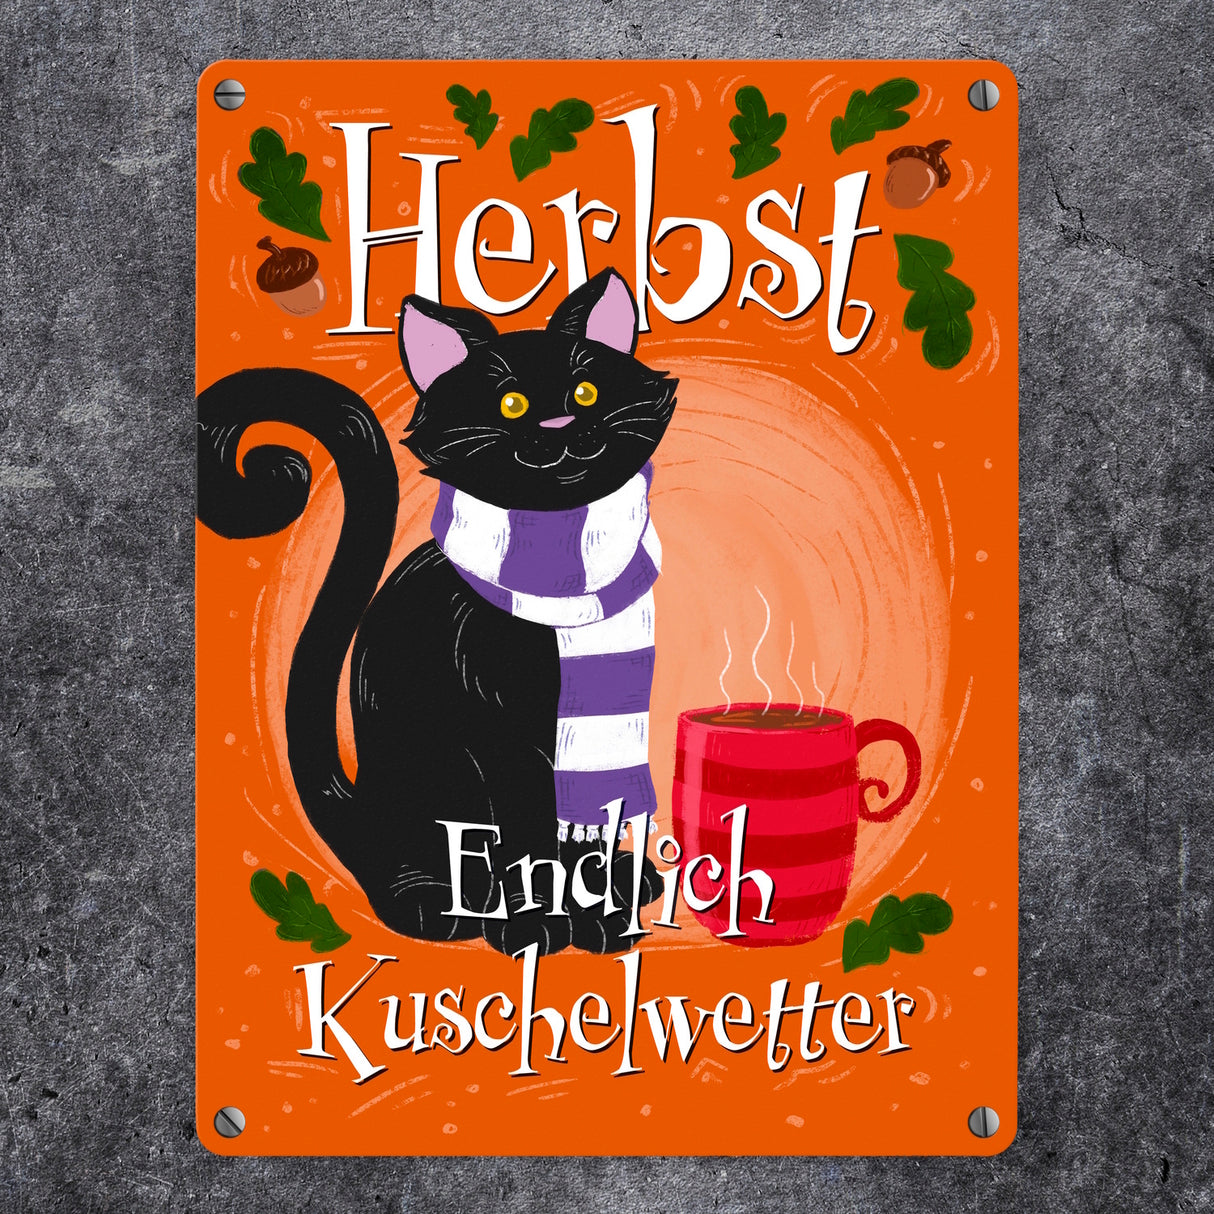 Herbst - Endlich Kuschelwetter Metallschild mit schwarzer Katze